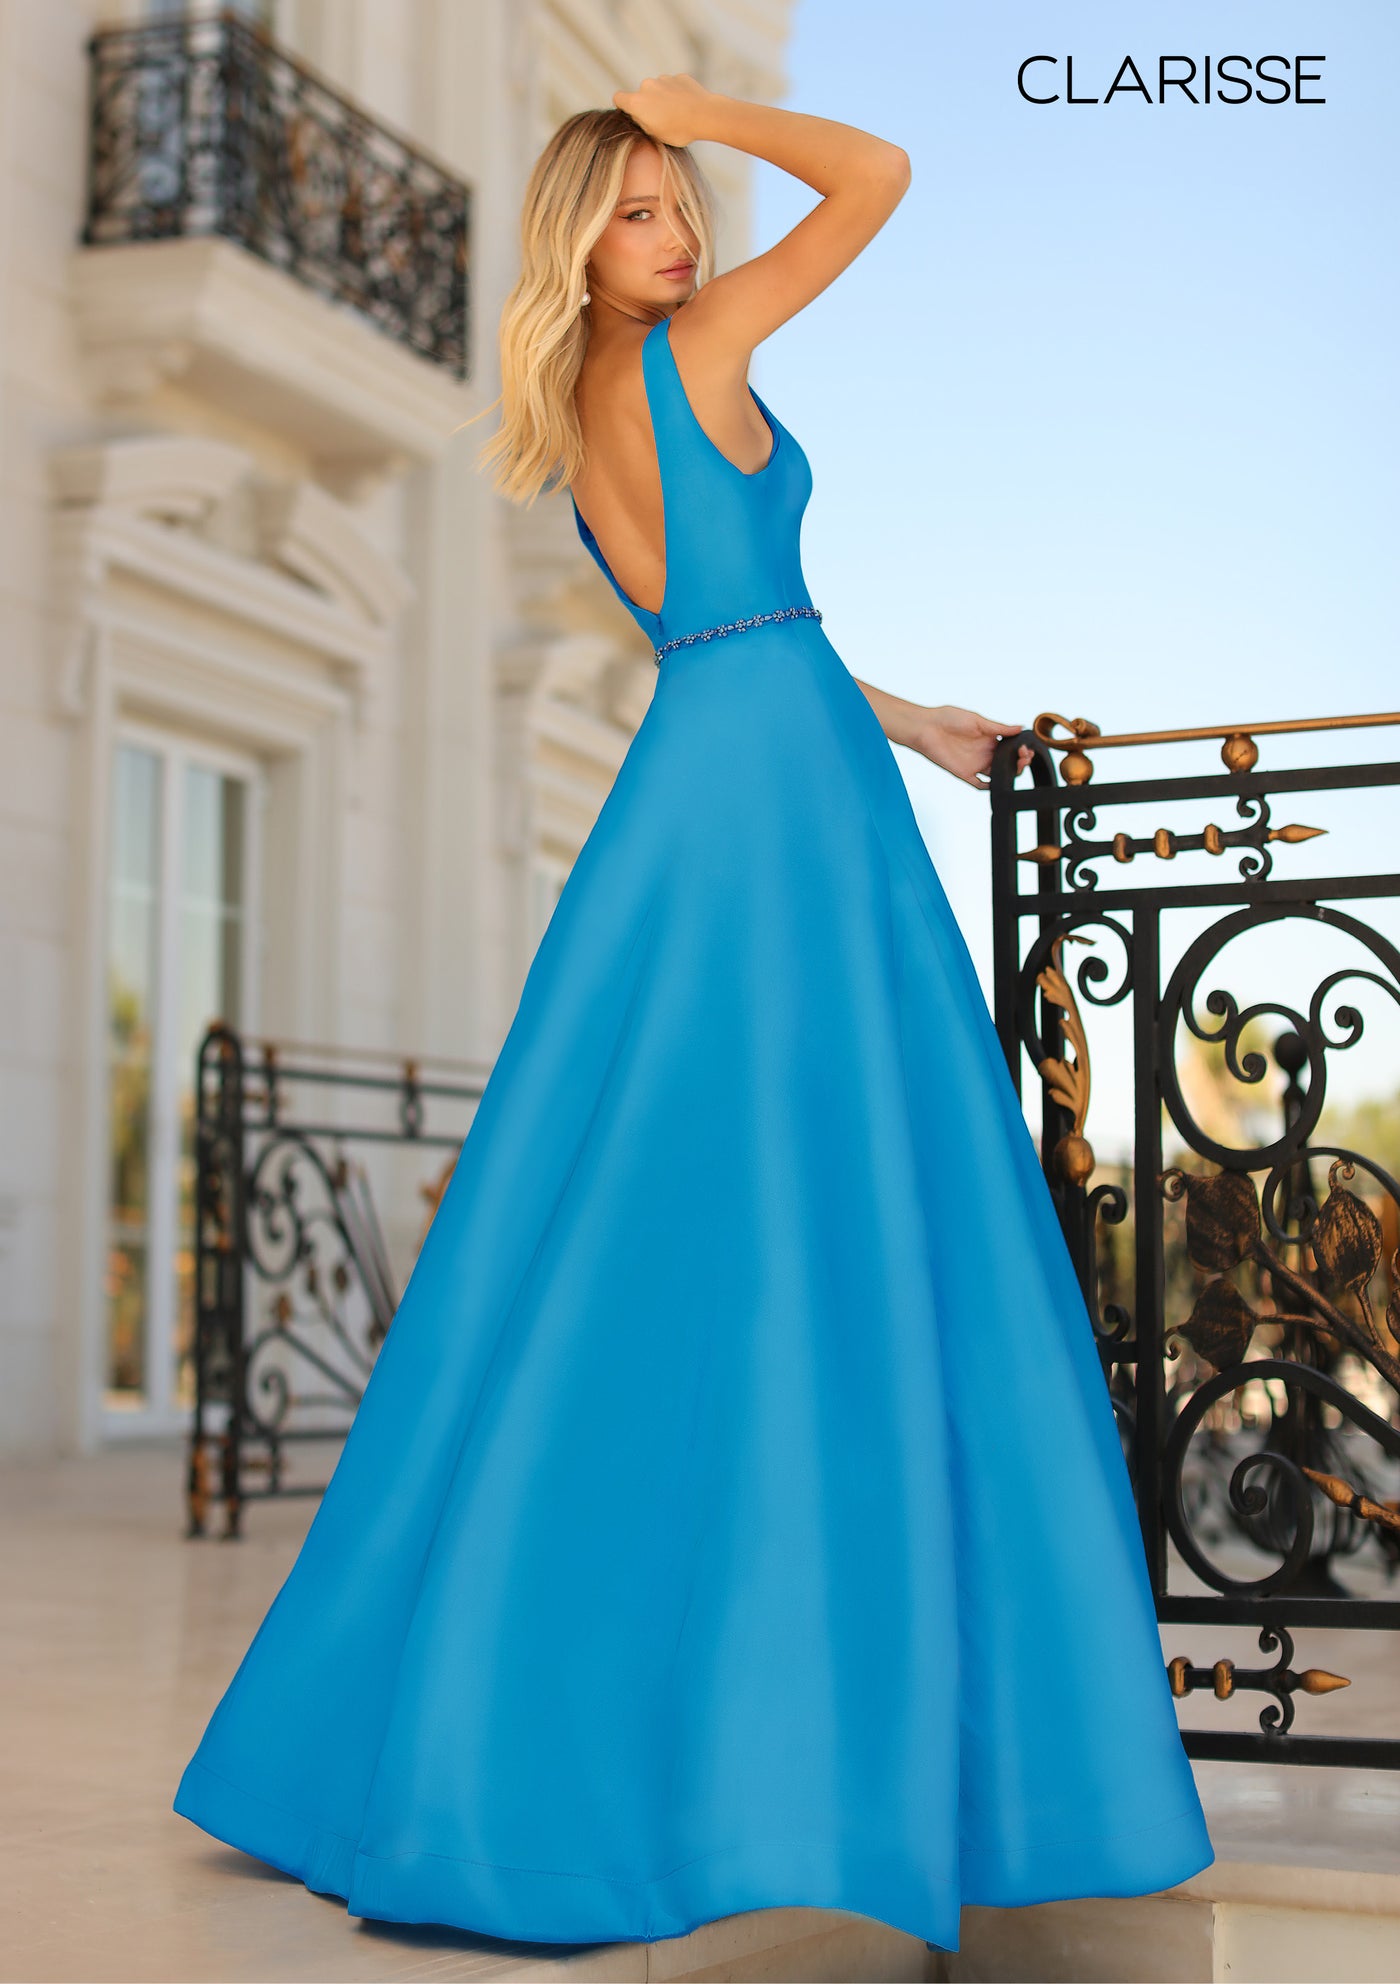 Clarisse 8194 Ocean Blue Prom Dress